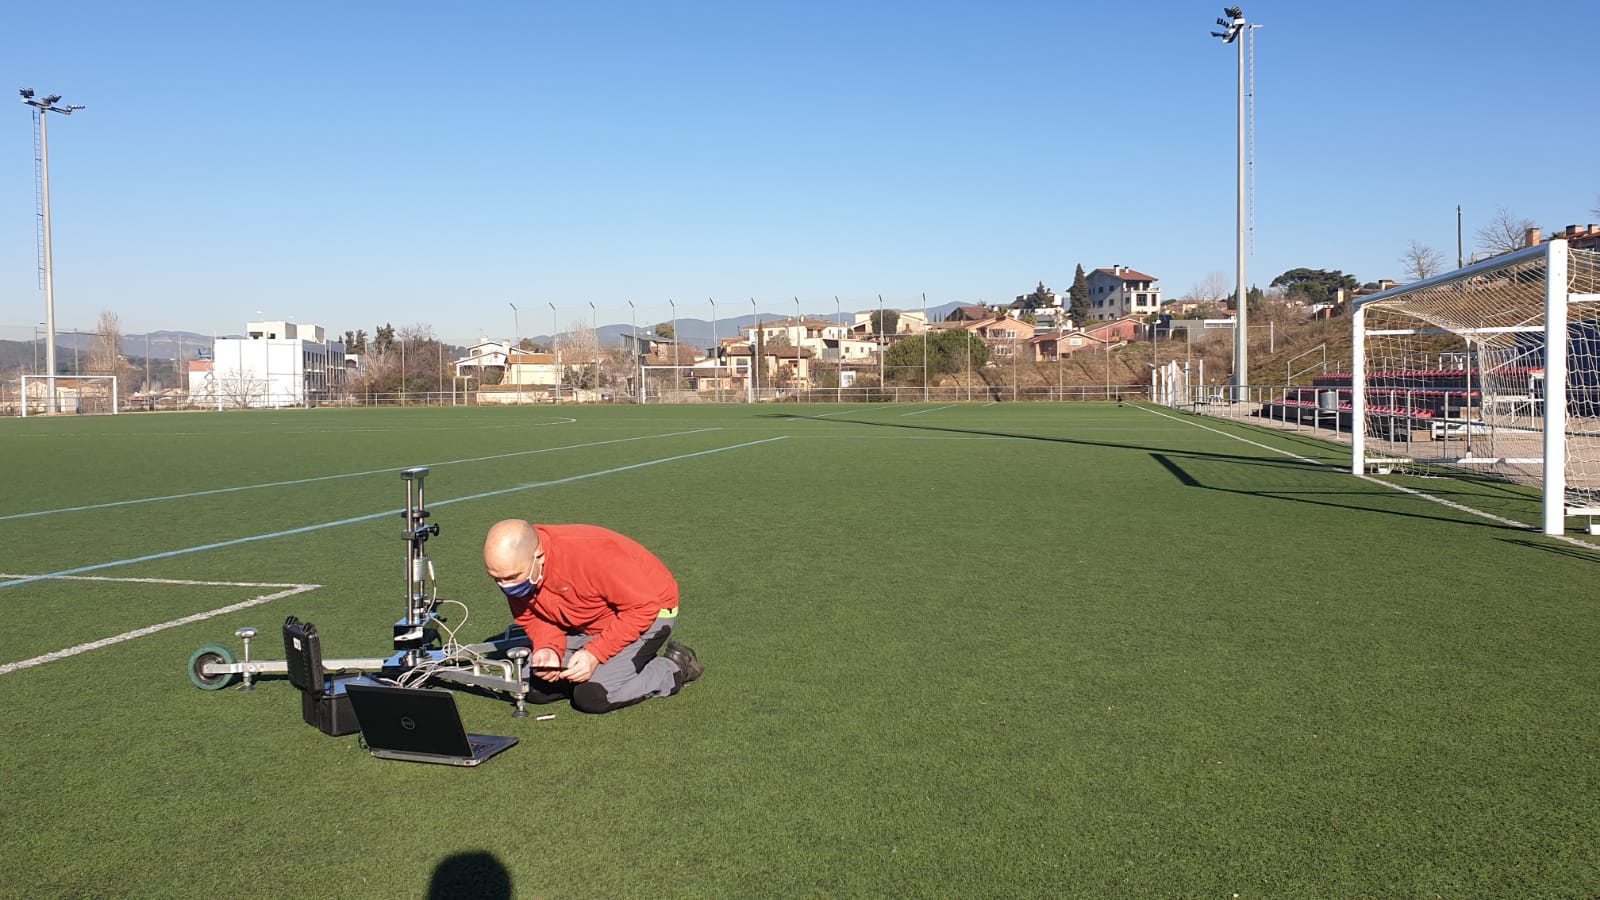 El camp municipal de futbol de Santa Agnès lluirà gespa nova aquest any